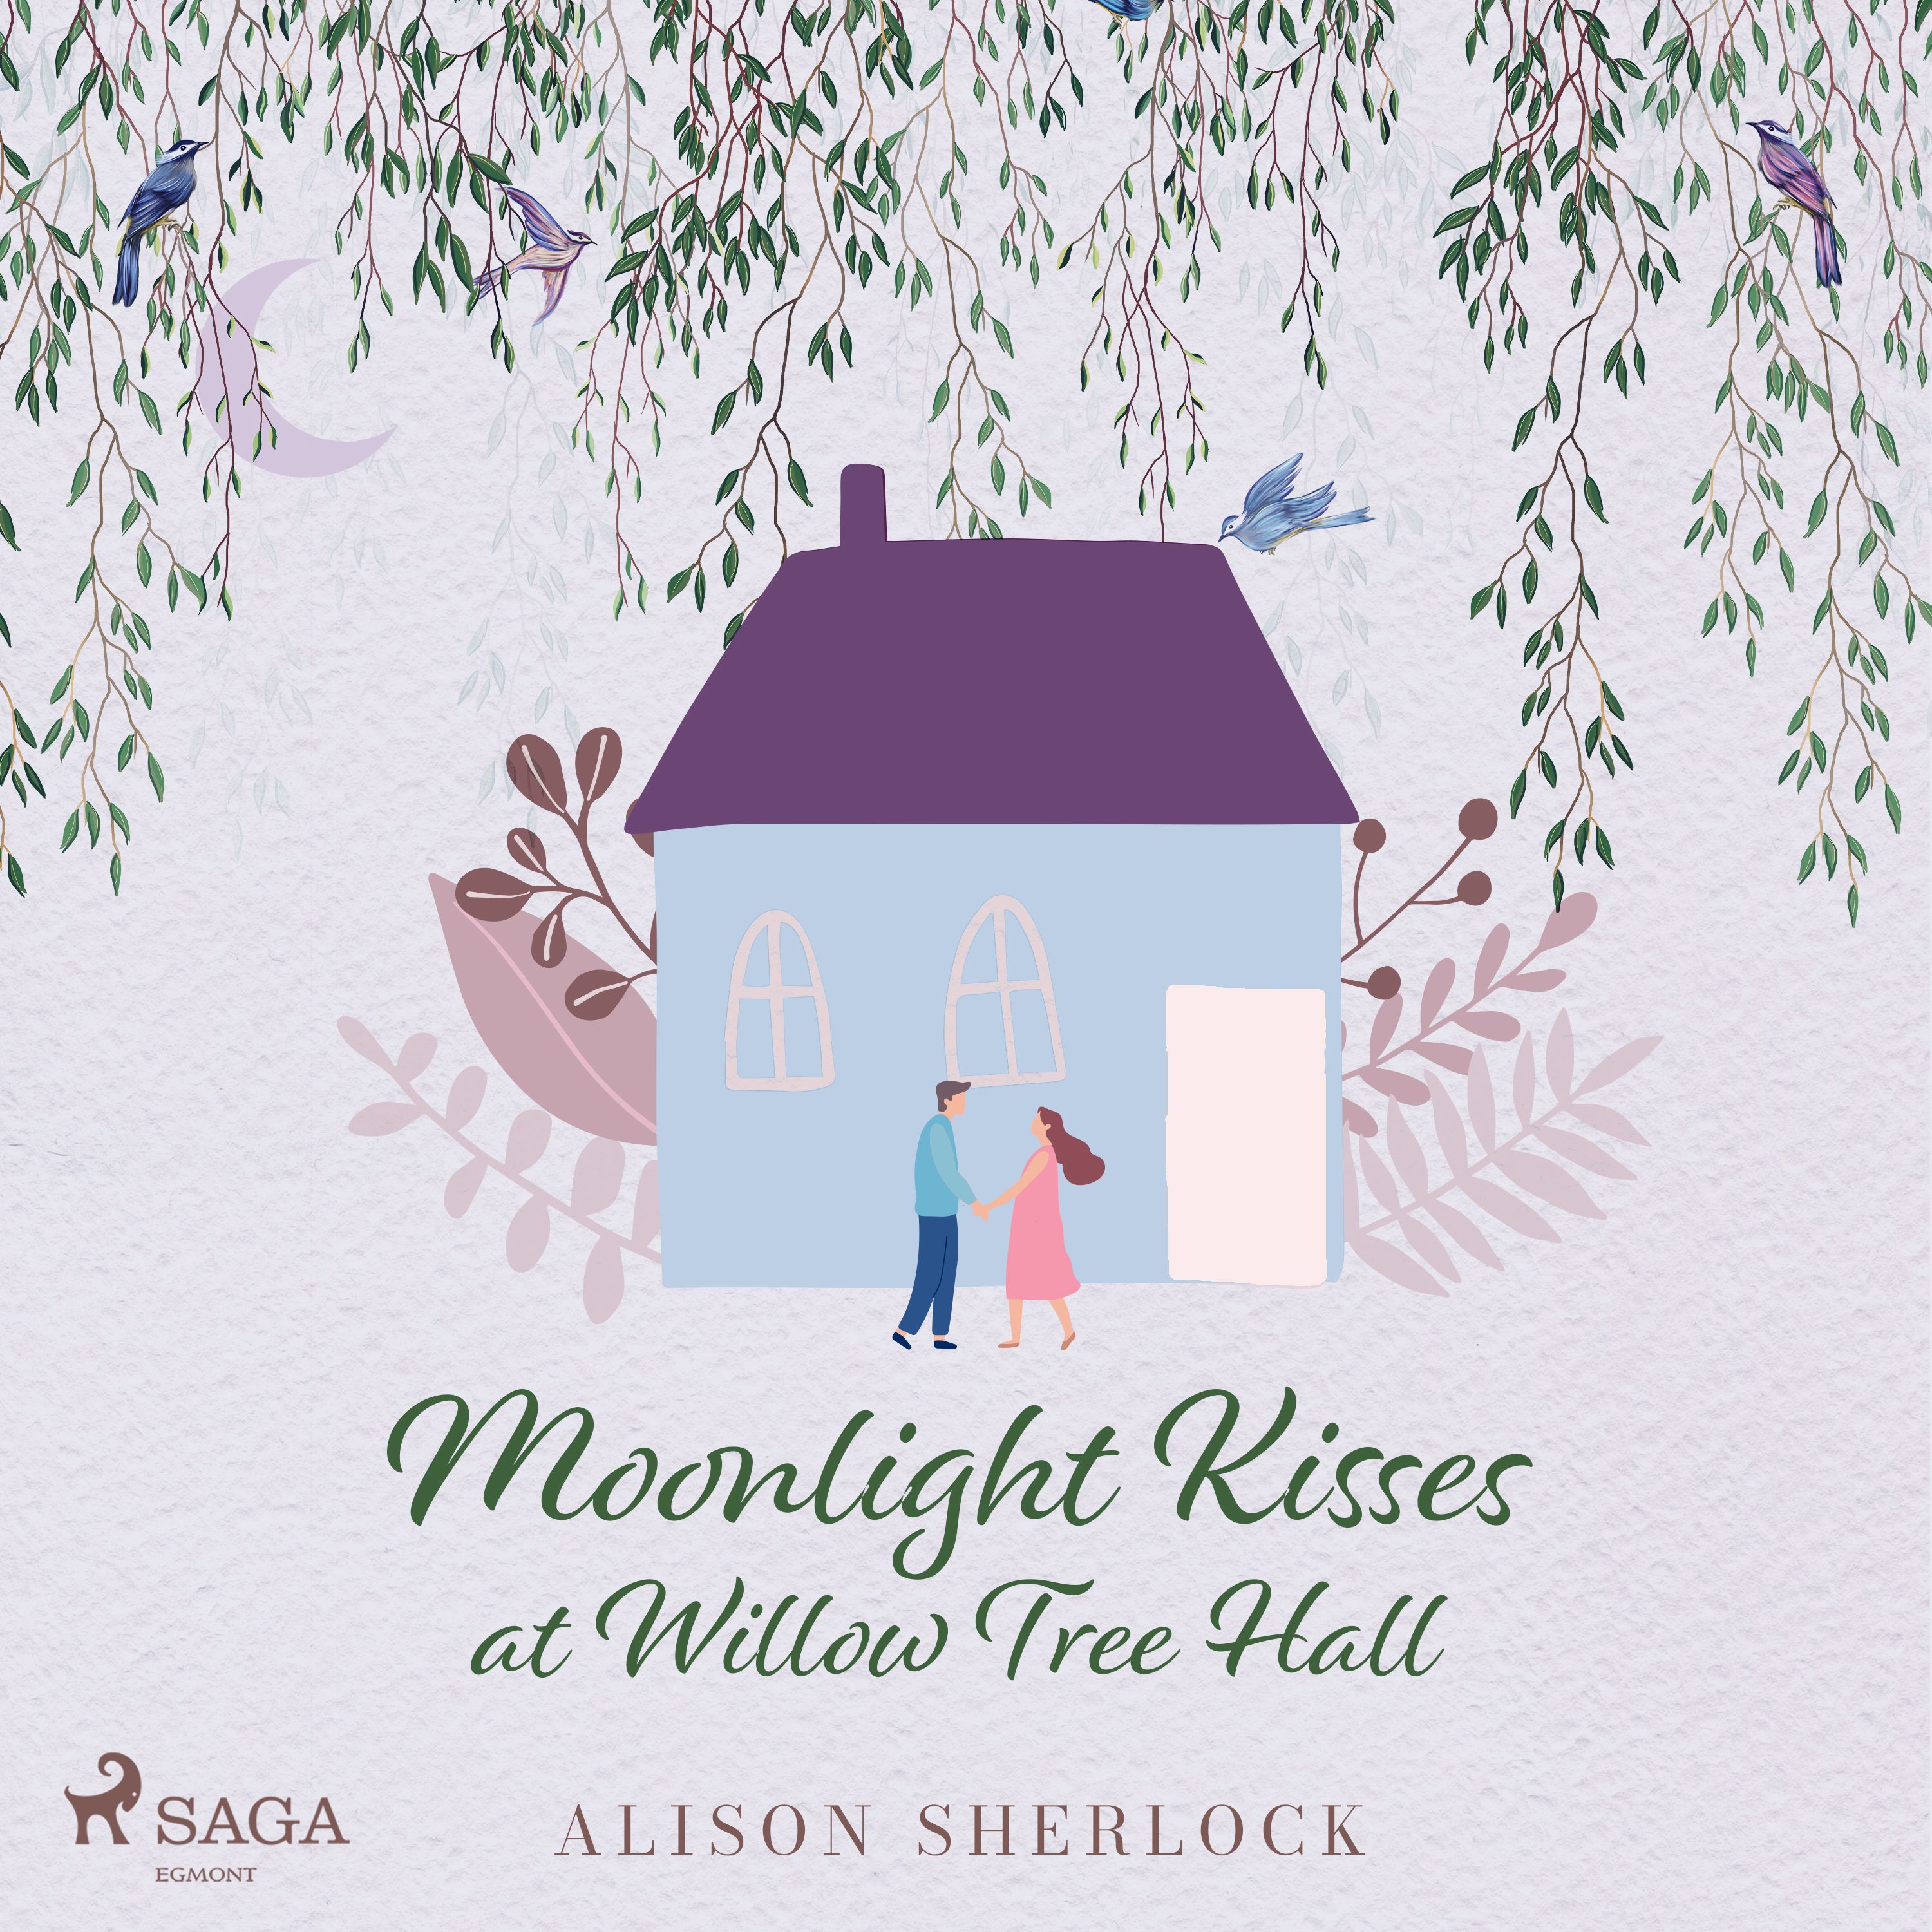 Moonlight Kisses at Willow Tree Hall, ljudbok av Alison Sherlock